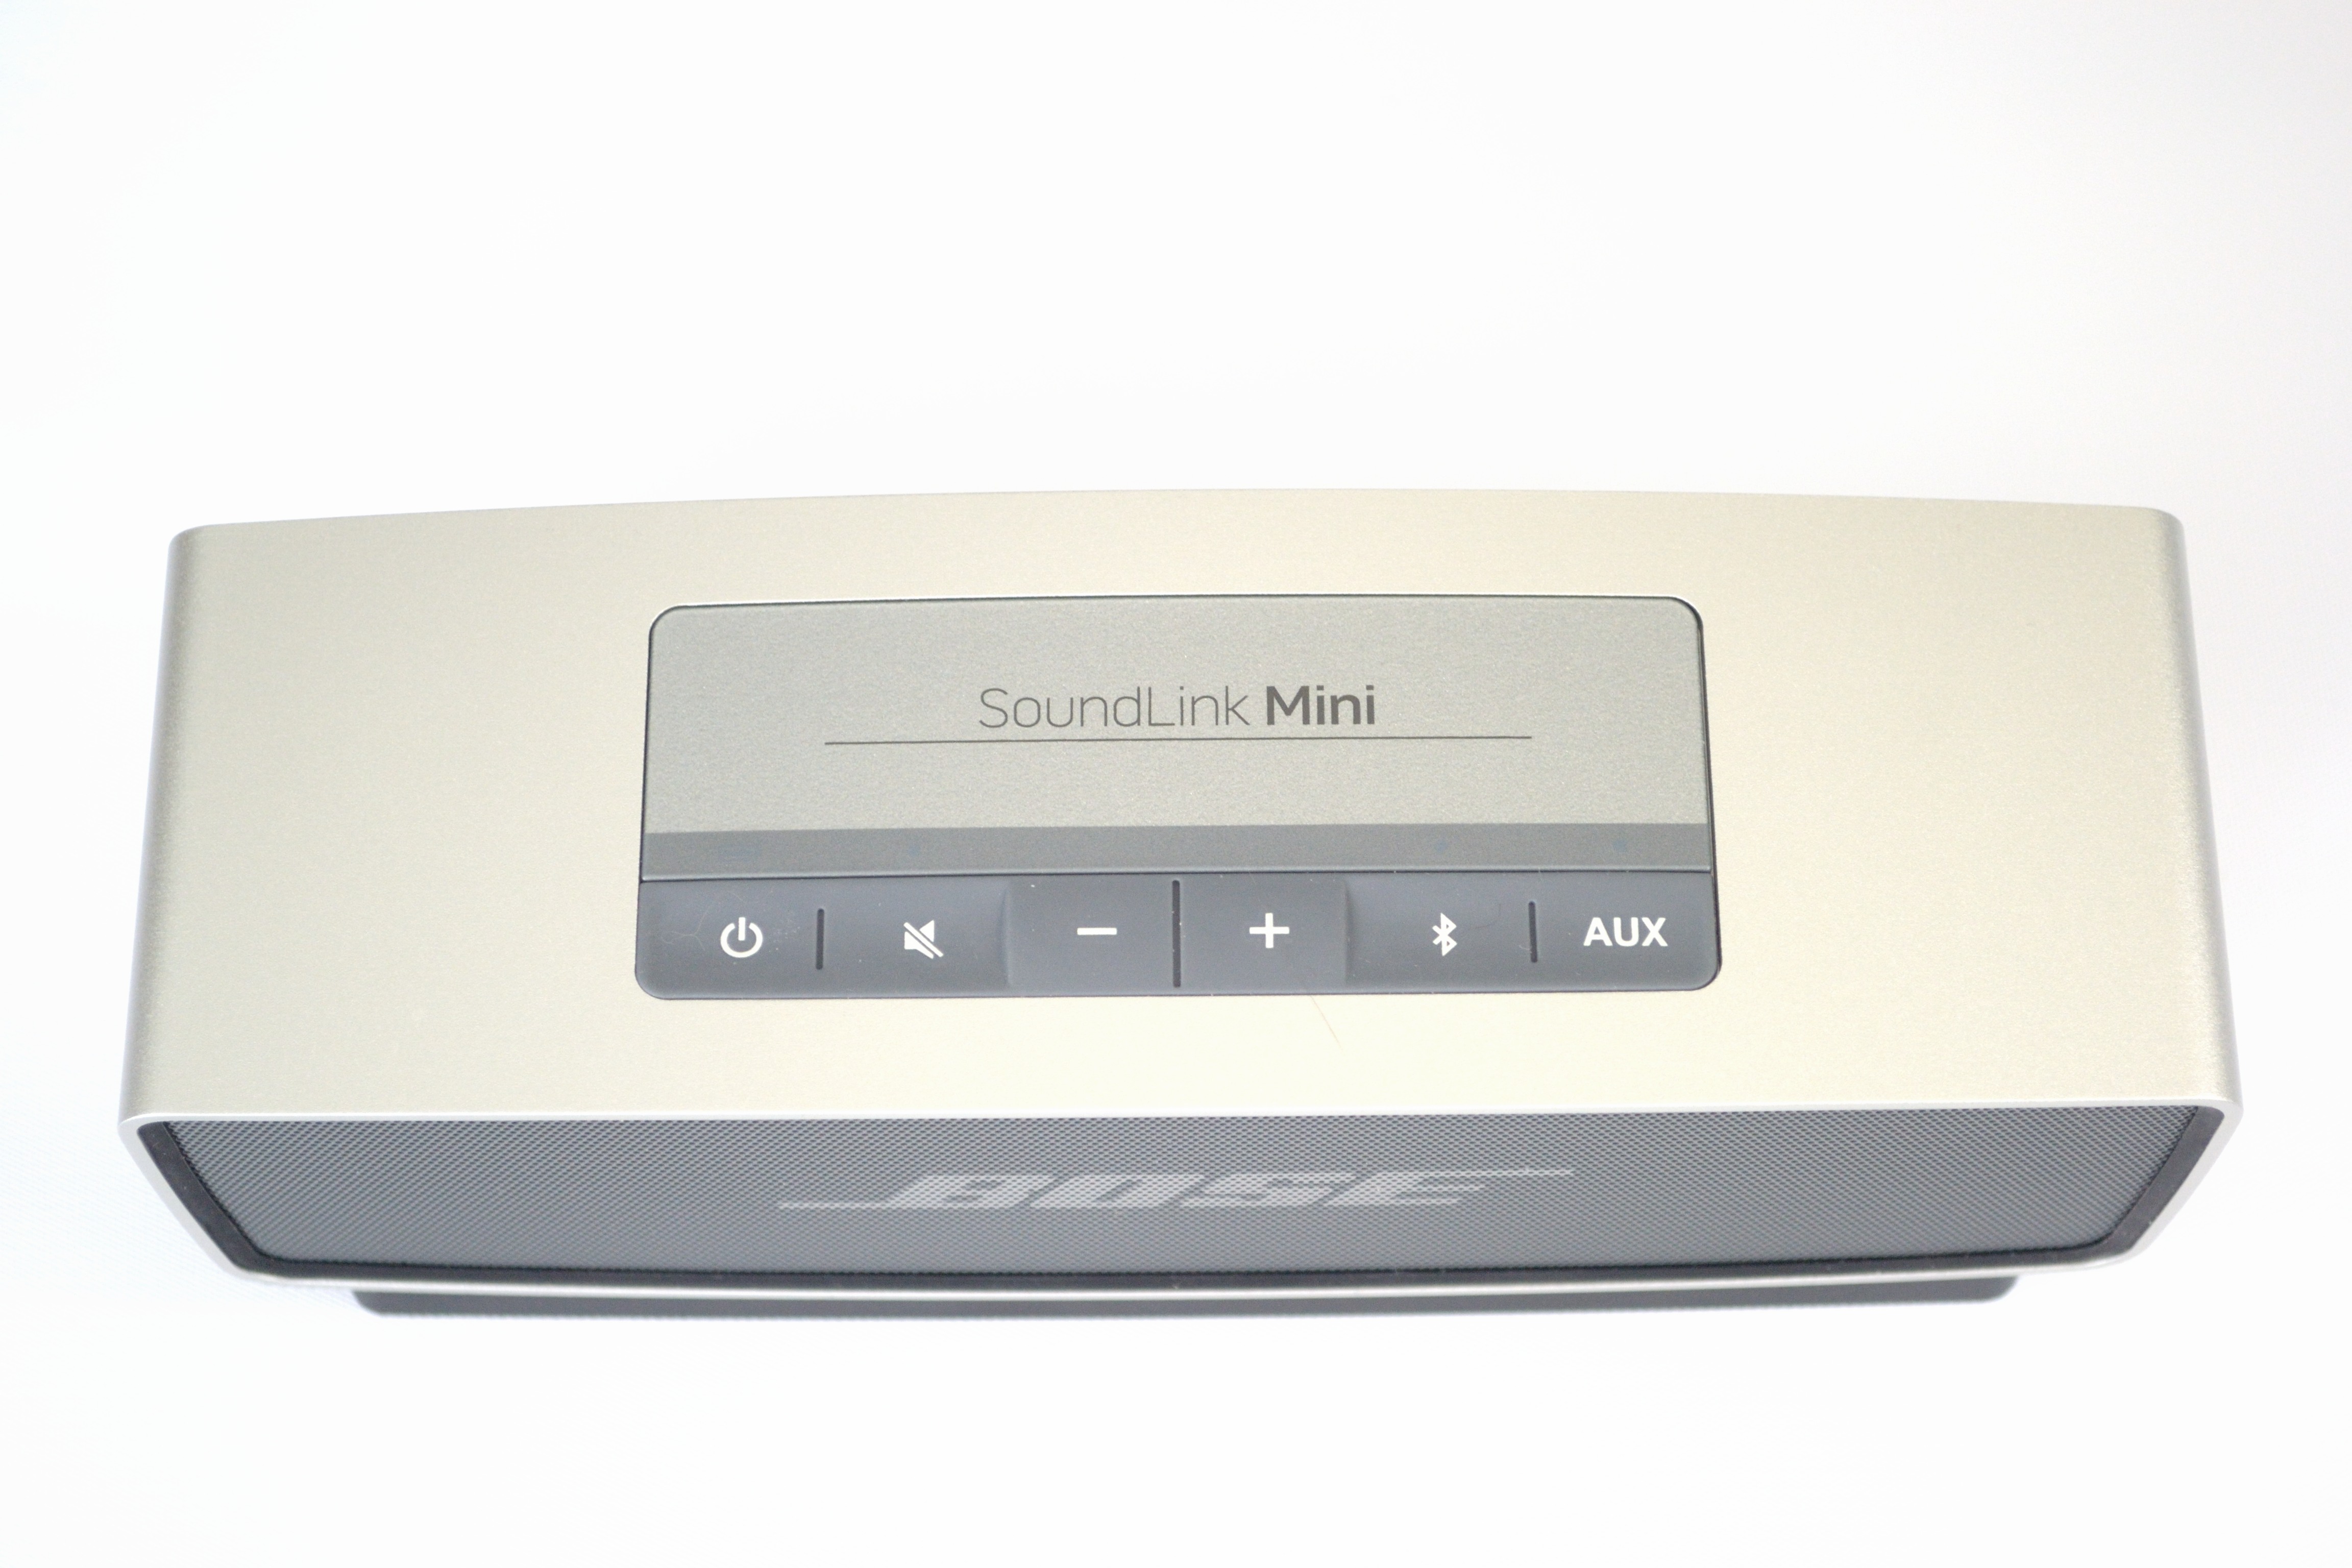 Bose Soundlink Mini $20 off on Amazon